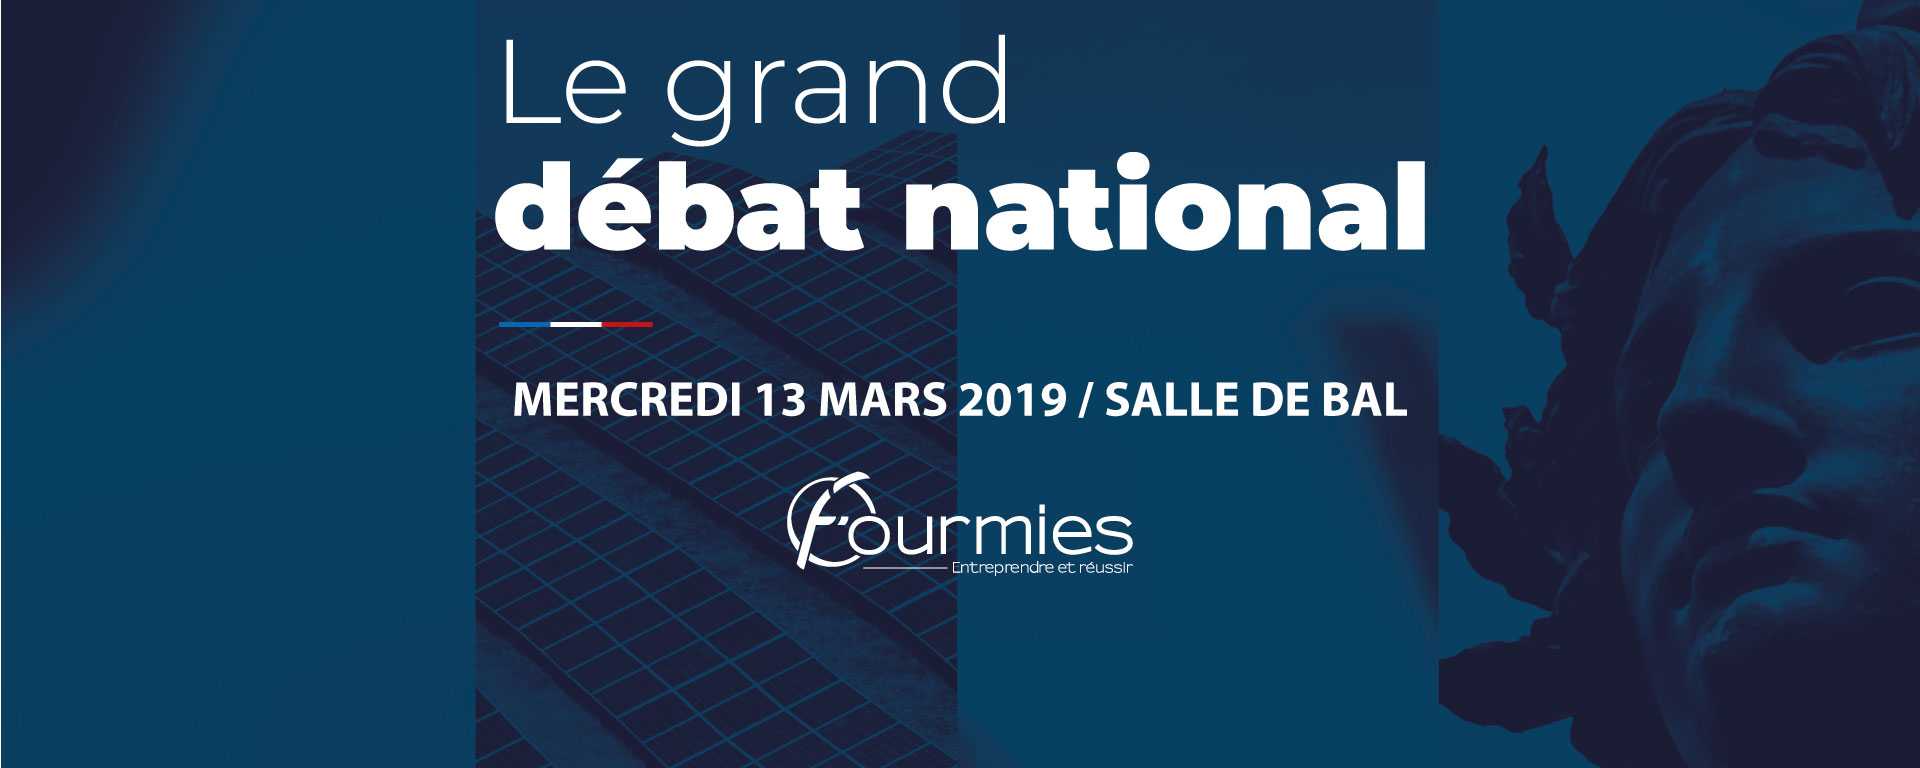 Recueil des comptes rendus des discussions du Grand Débat National du 13 mars 2019 à Fourmies